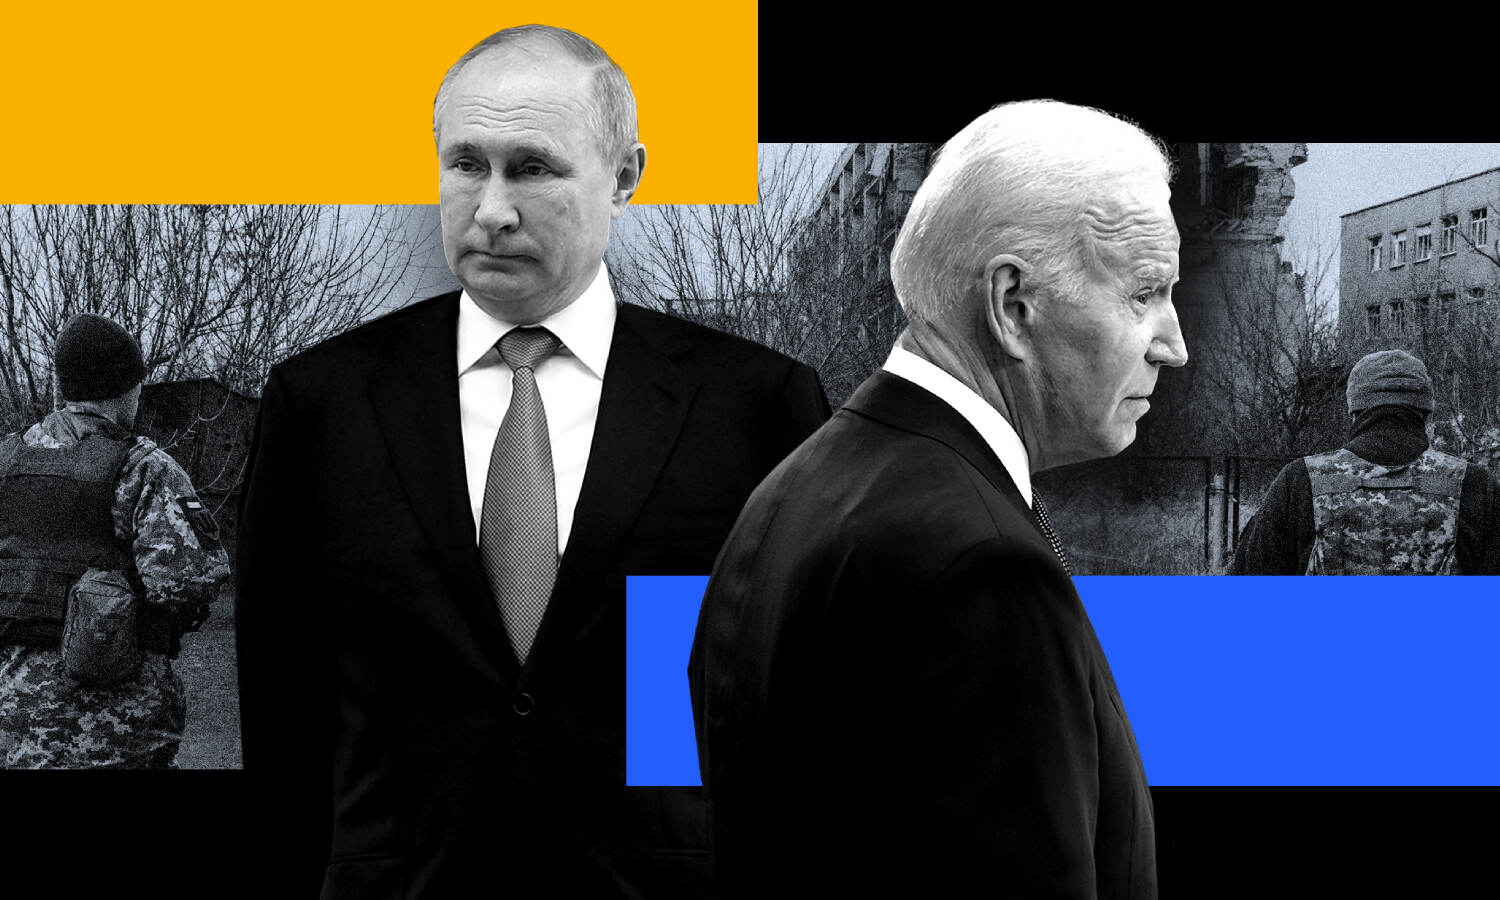 Russia-Ukraine War : न्यूक्लियर खतरे के बीच यूक्रेन जाएंगे अमेरिकी राष्ट्रपति जो बाइडेन, रूस को देंगे कड़ा संदेश